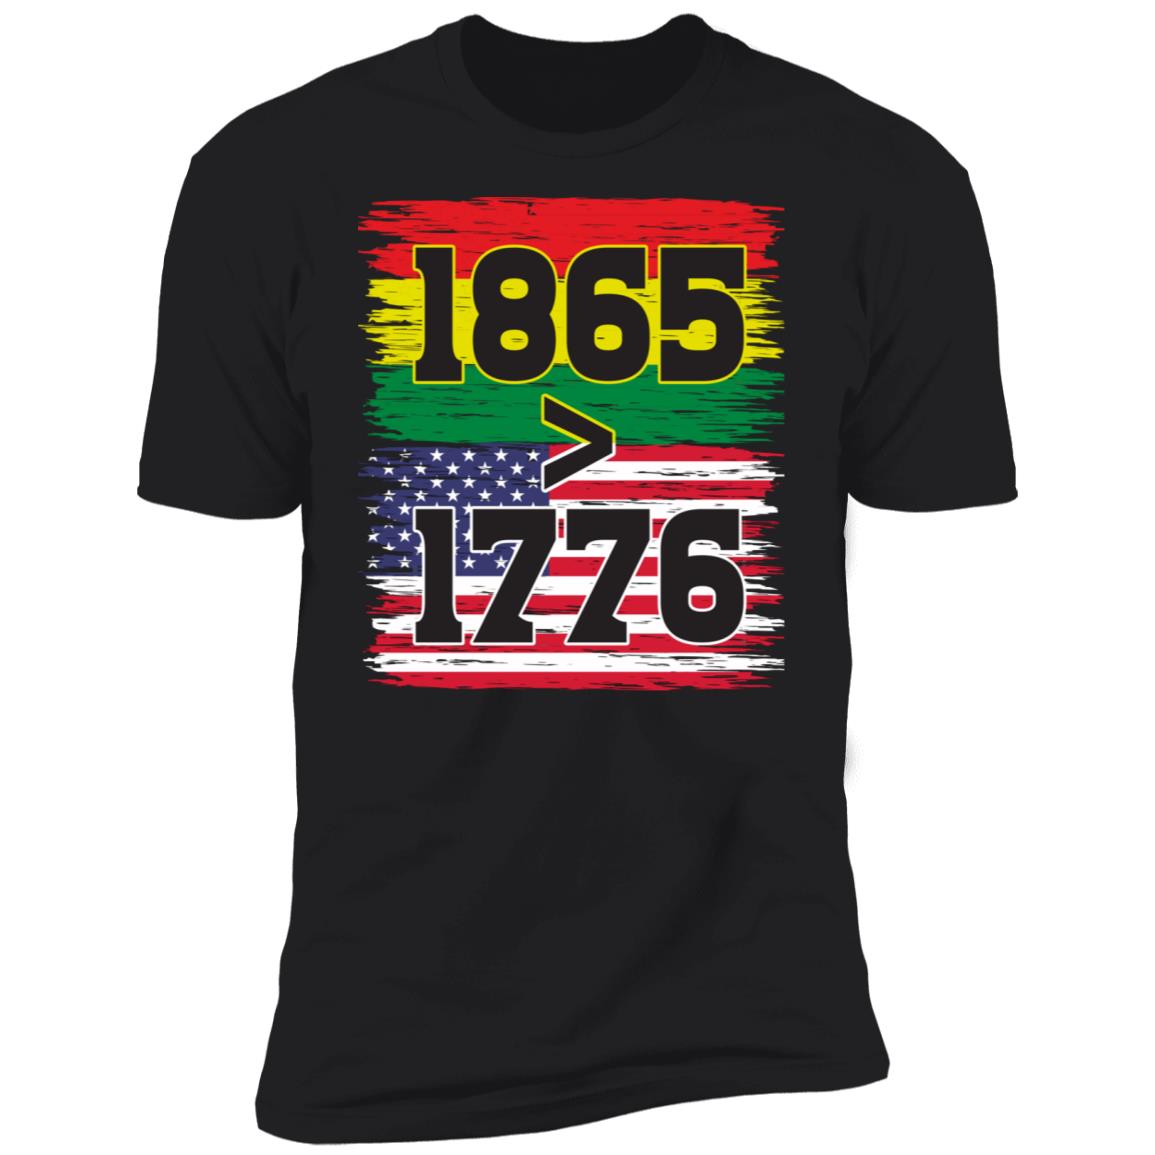 1865 > 1976 Juneteenth T-shirt Apparel Gearment Premium T-Shirt Black S